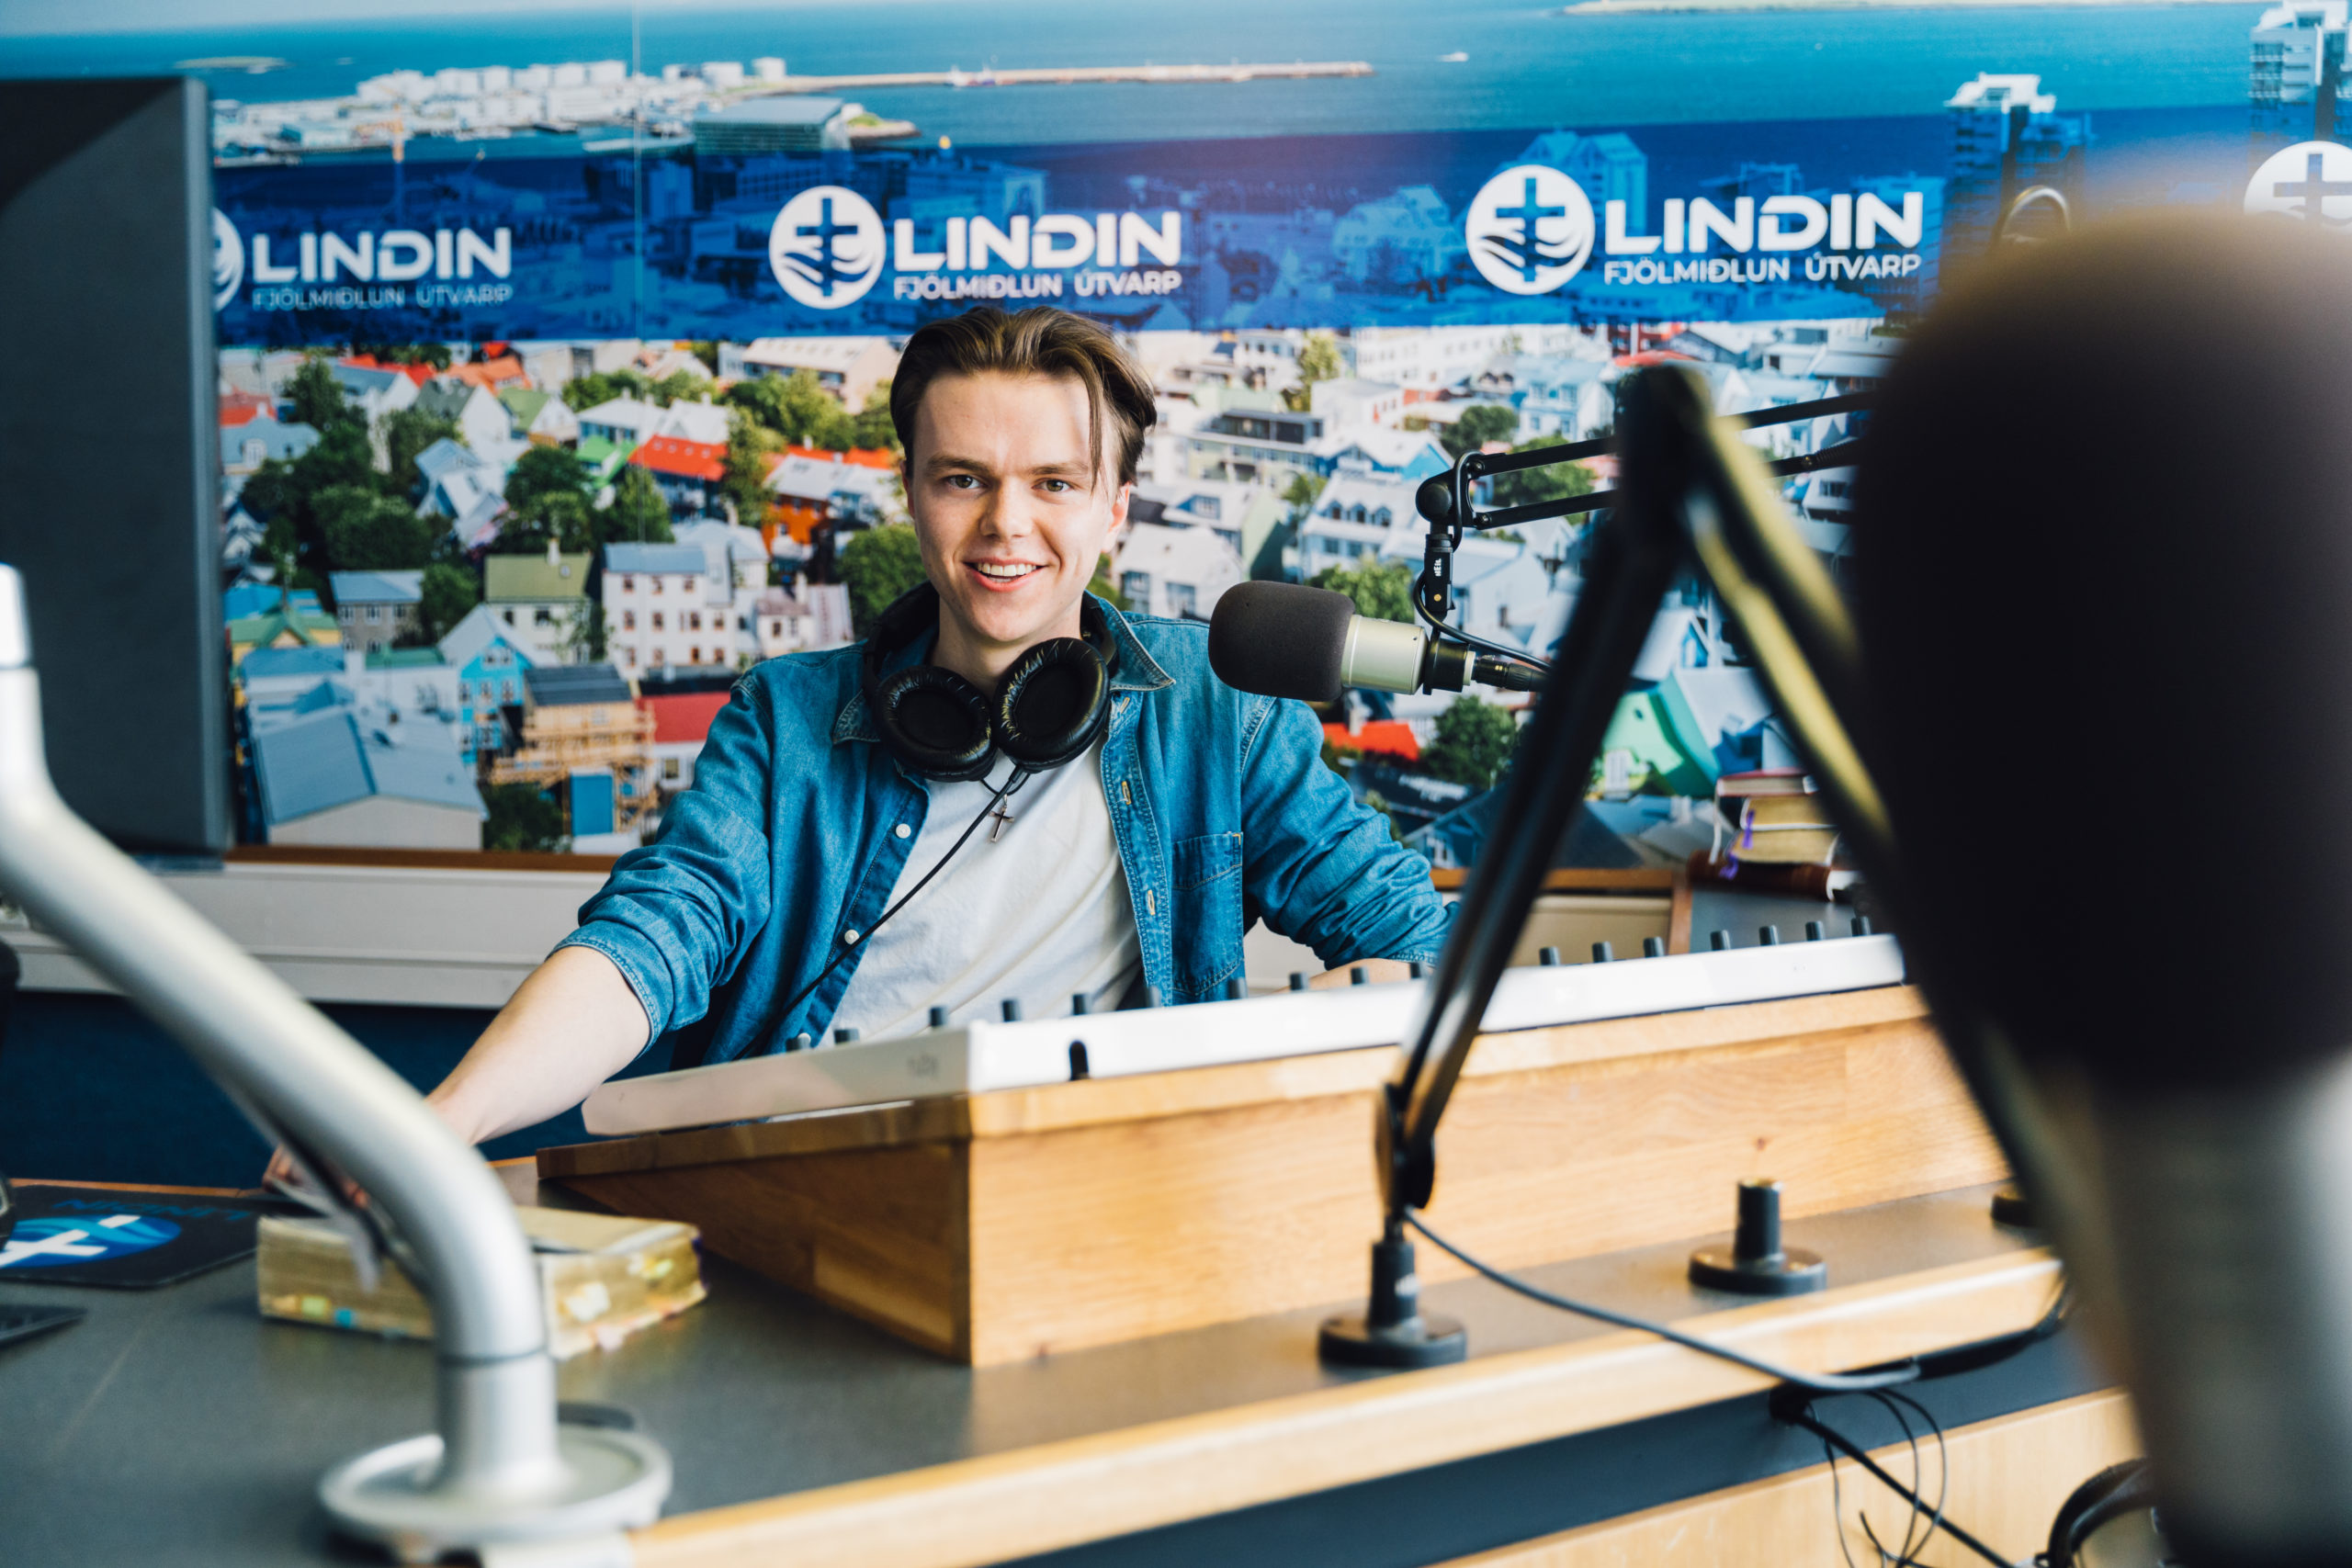 Friðrik brenner for å se en ny generasjon med islandske ungdommer som følger Jesus